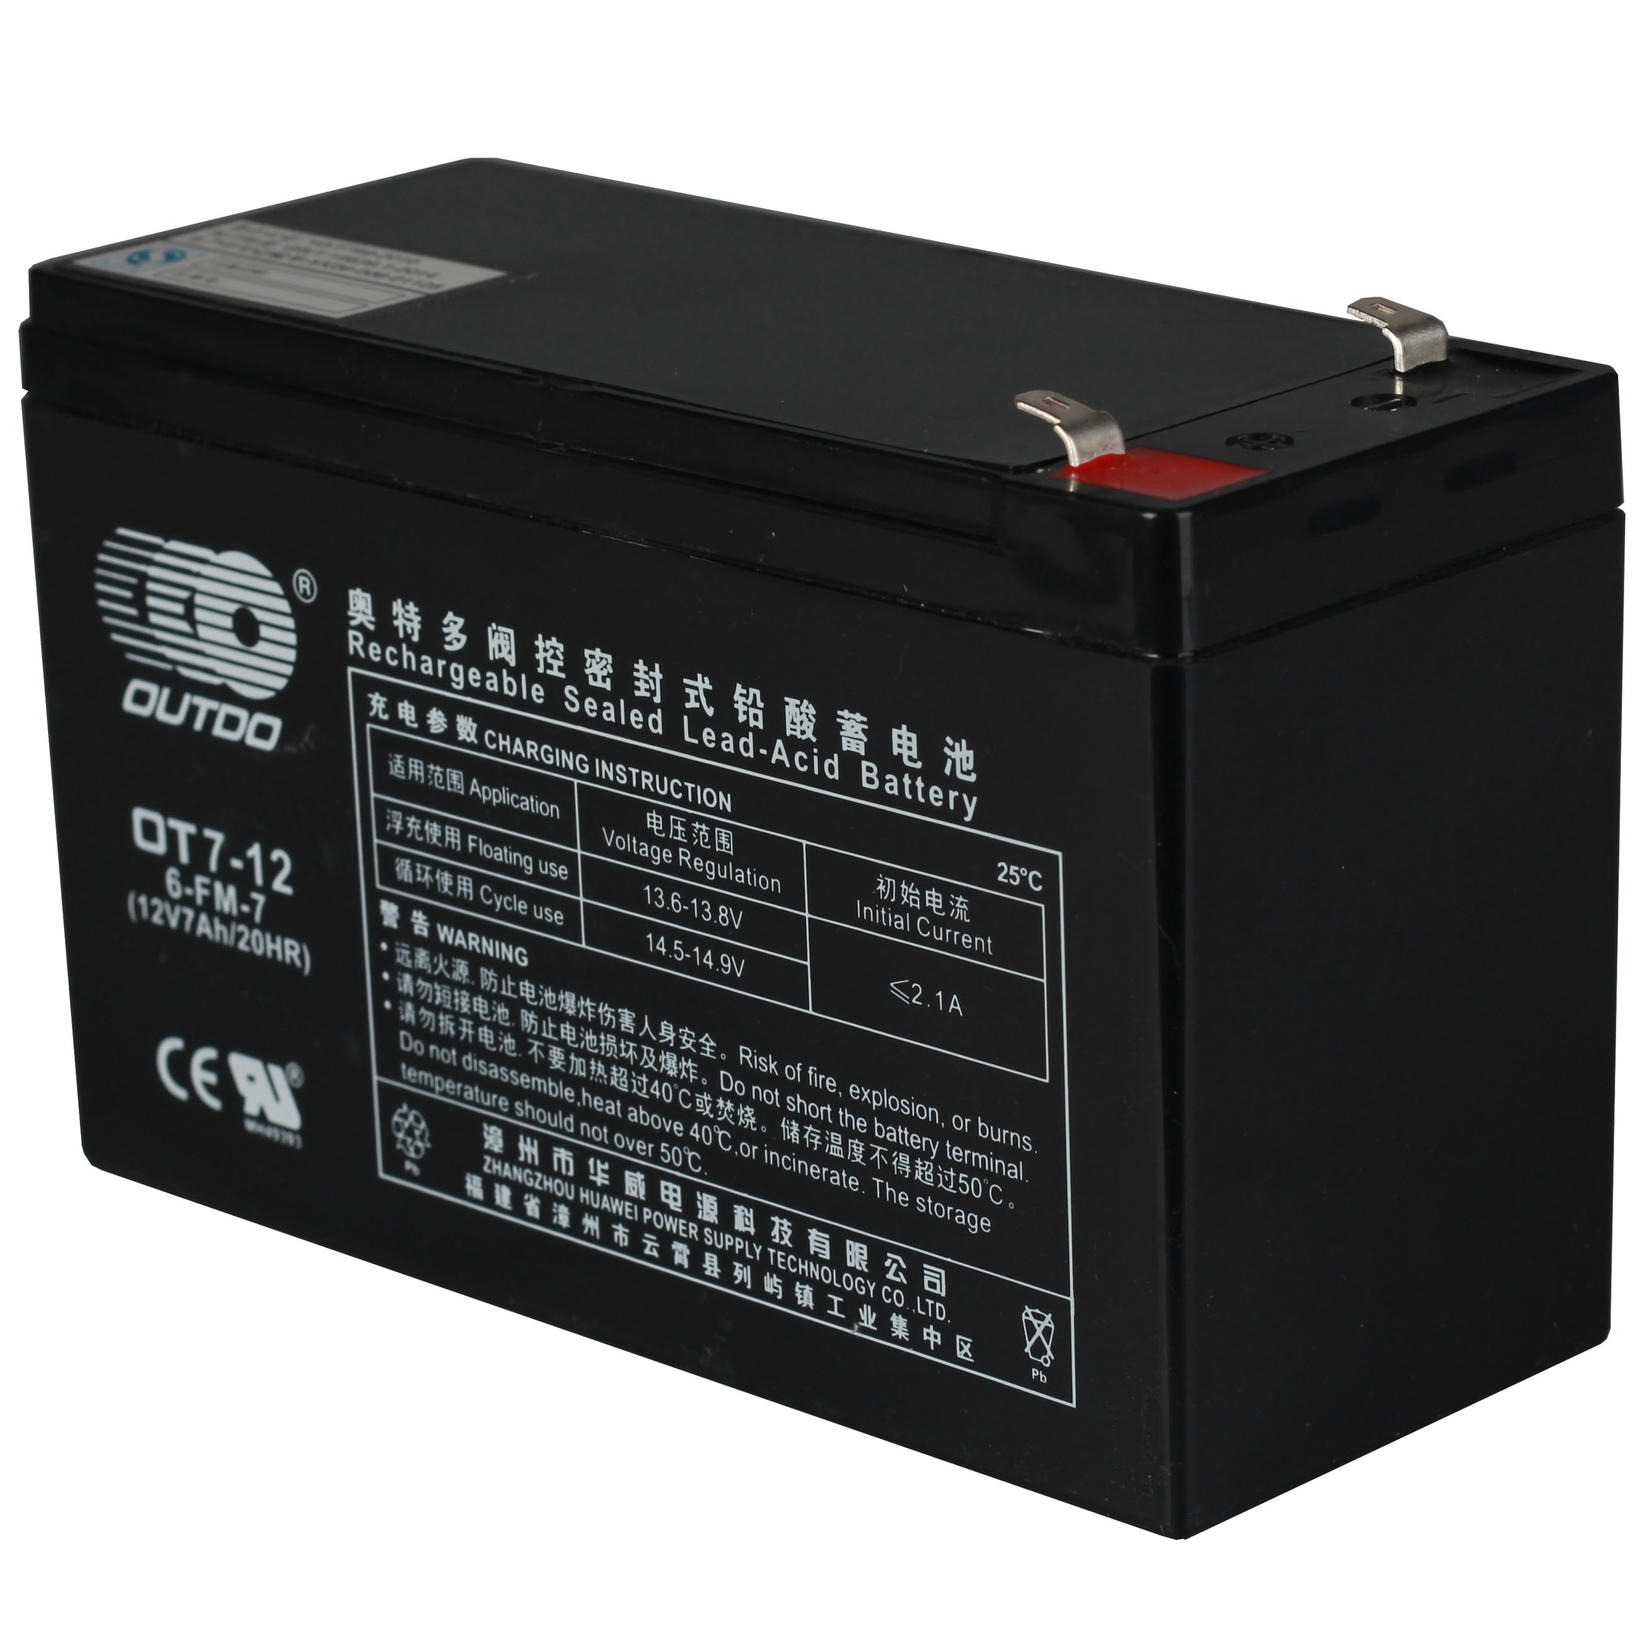 奥特多蓄电池OT7-12 奥特多蓄电池12V7AH 铅酸免维护蓄电池 奥特多蓄电池厂家 UPS专用蓄电池